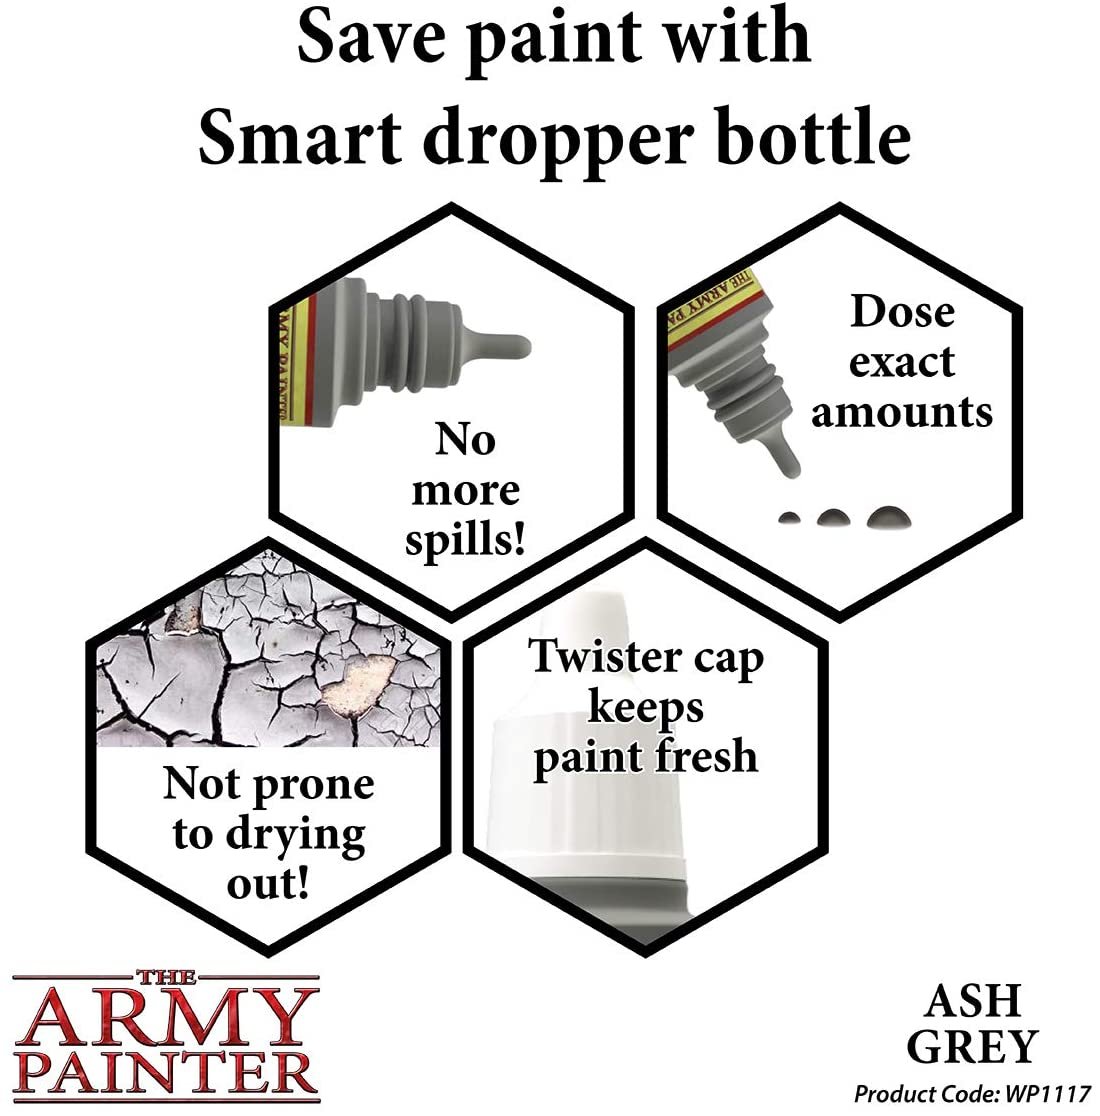 The Army Painter - Warpaints: Ash Grey (18ml/0.6oz)